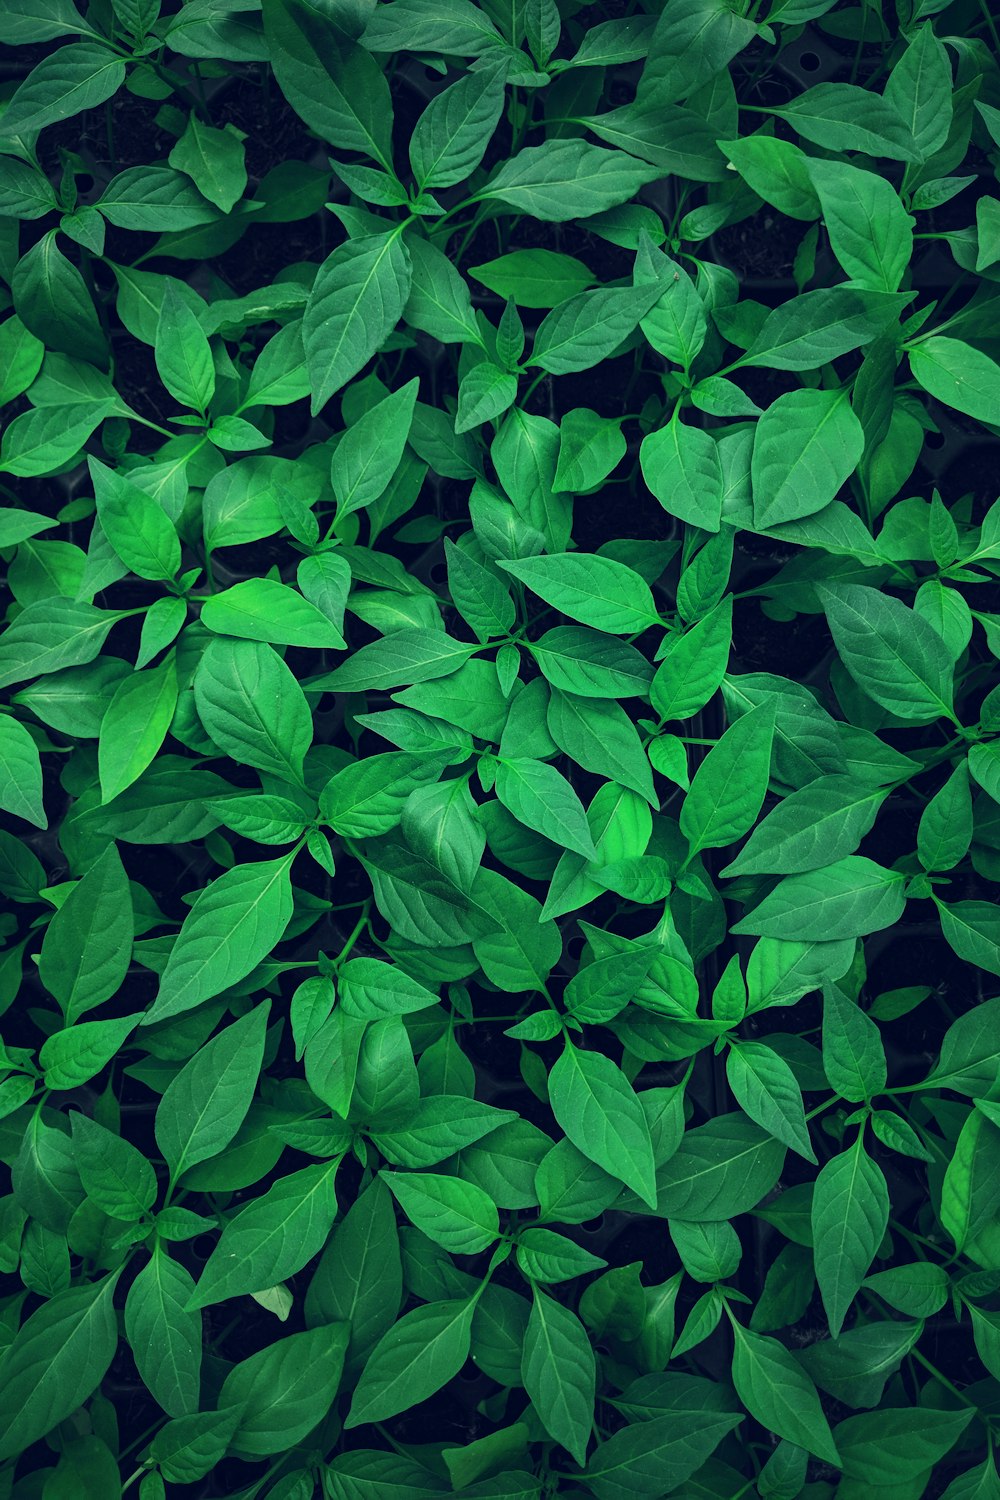 de 1000 imágenes de hojas verdes | imágenes gratis en